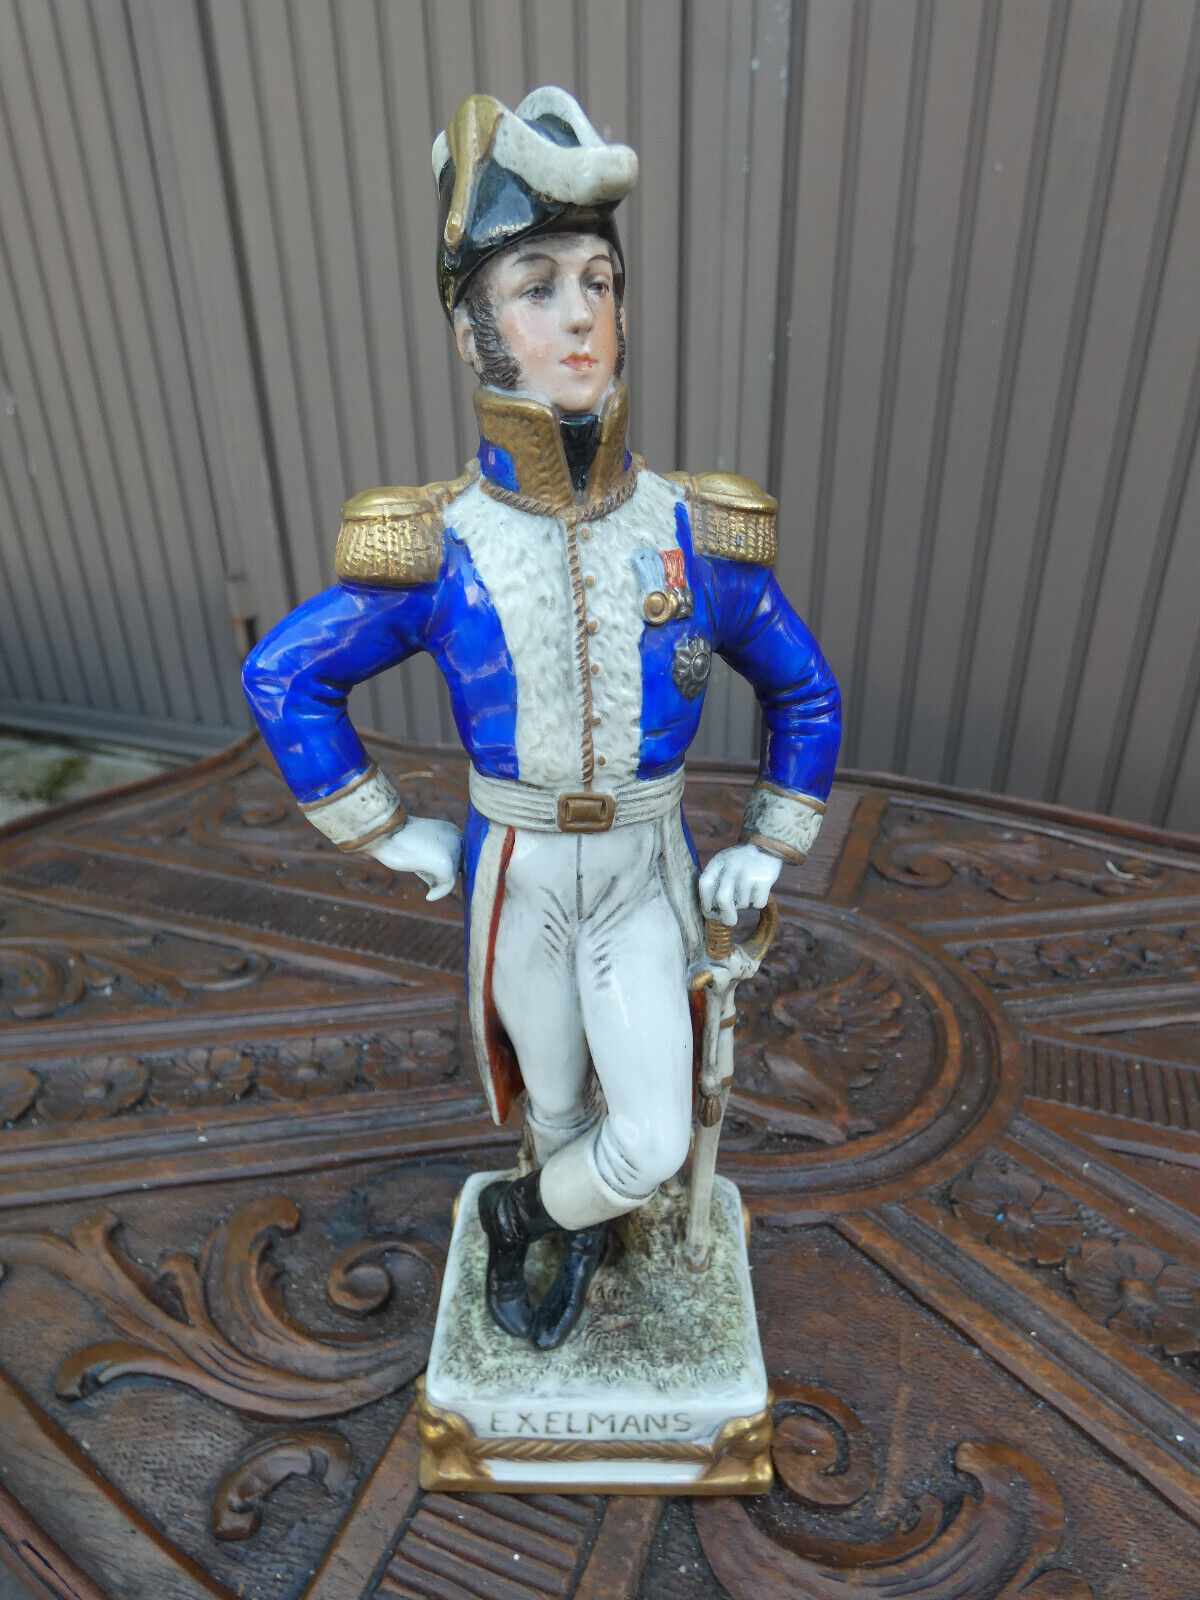 German Scheibe Alsbach porcelain napoleon general Exelmans soldier Figurine mark